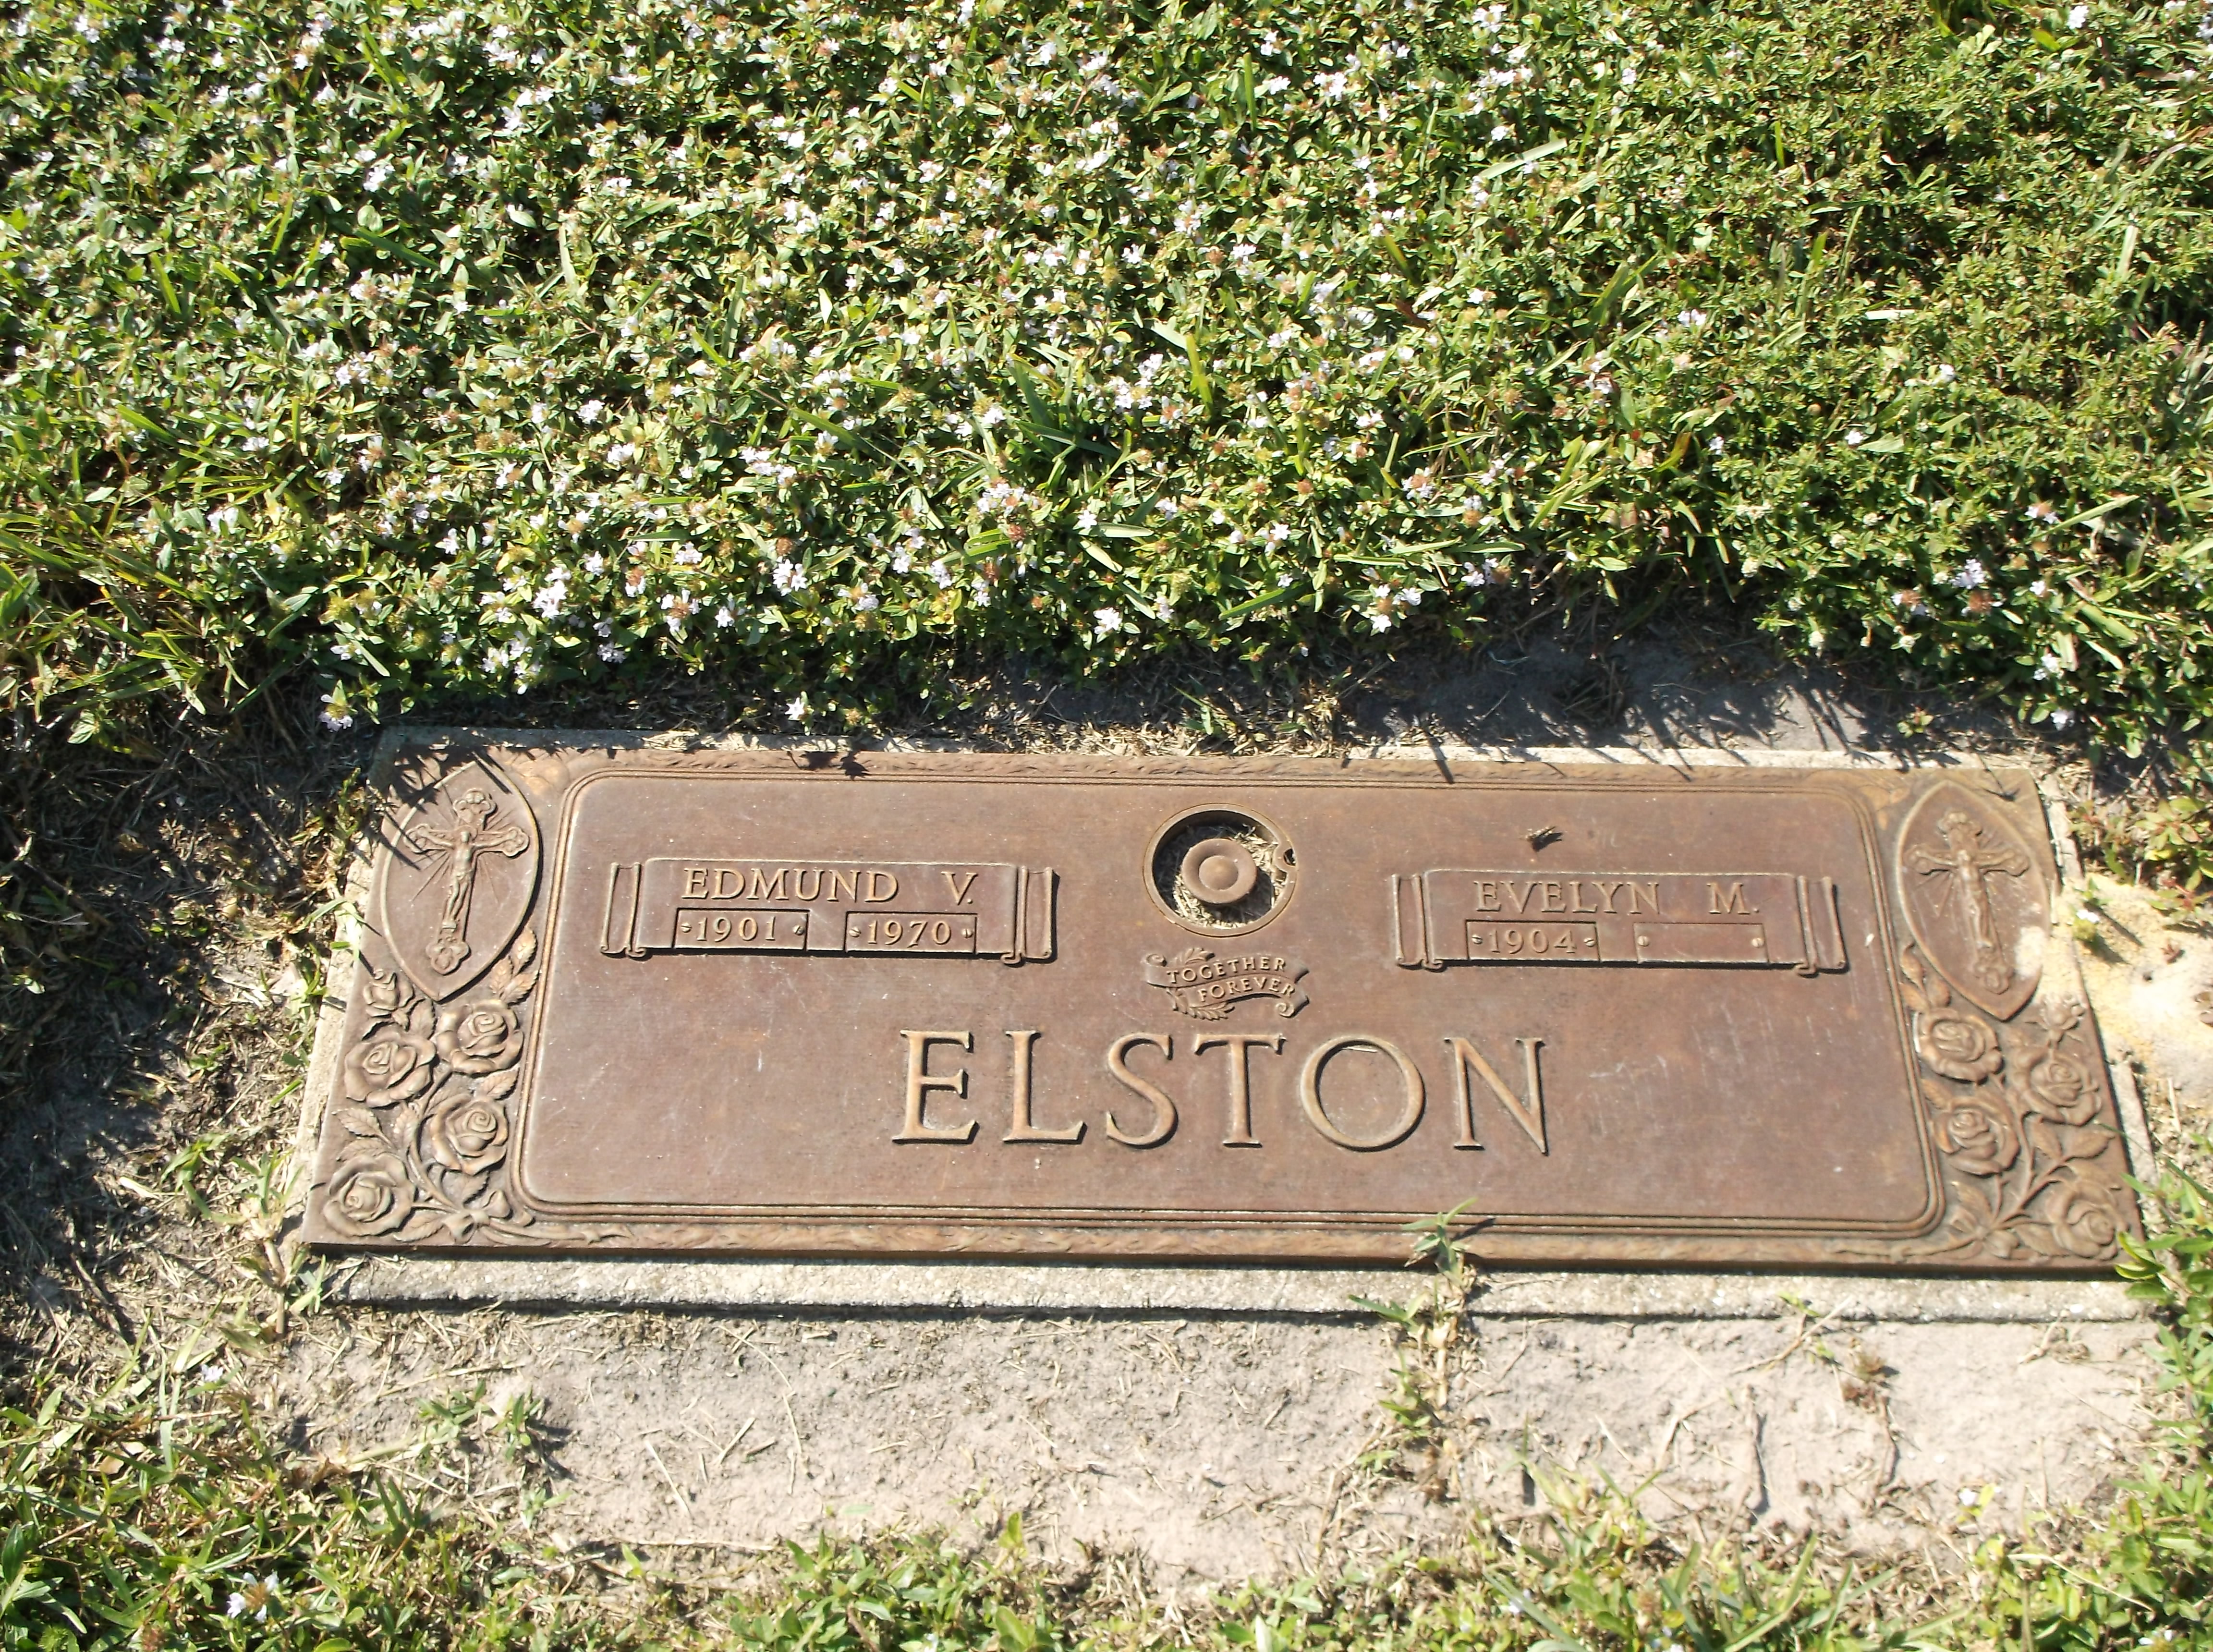 Edmund V Elston